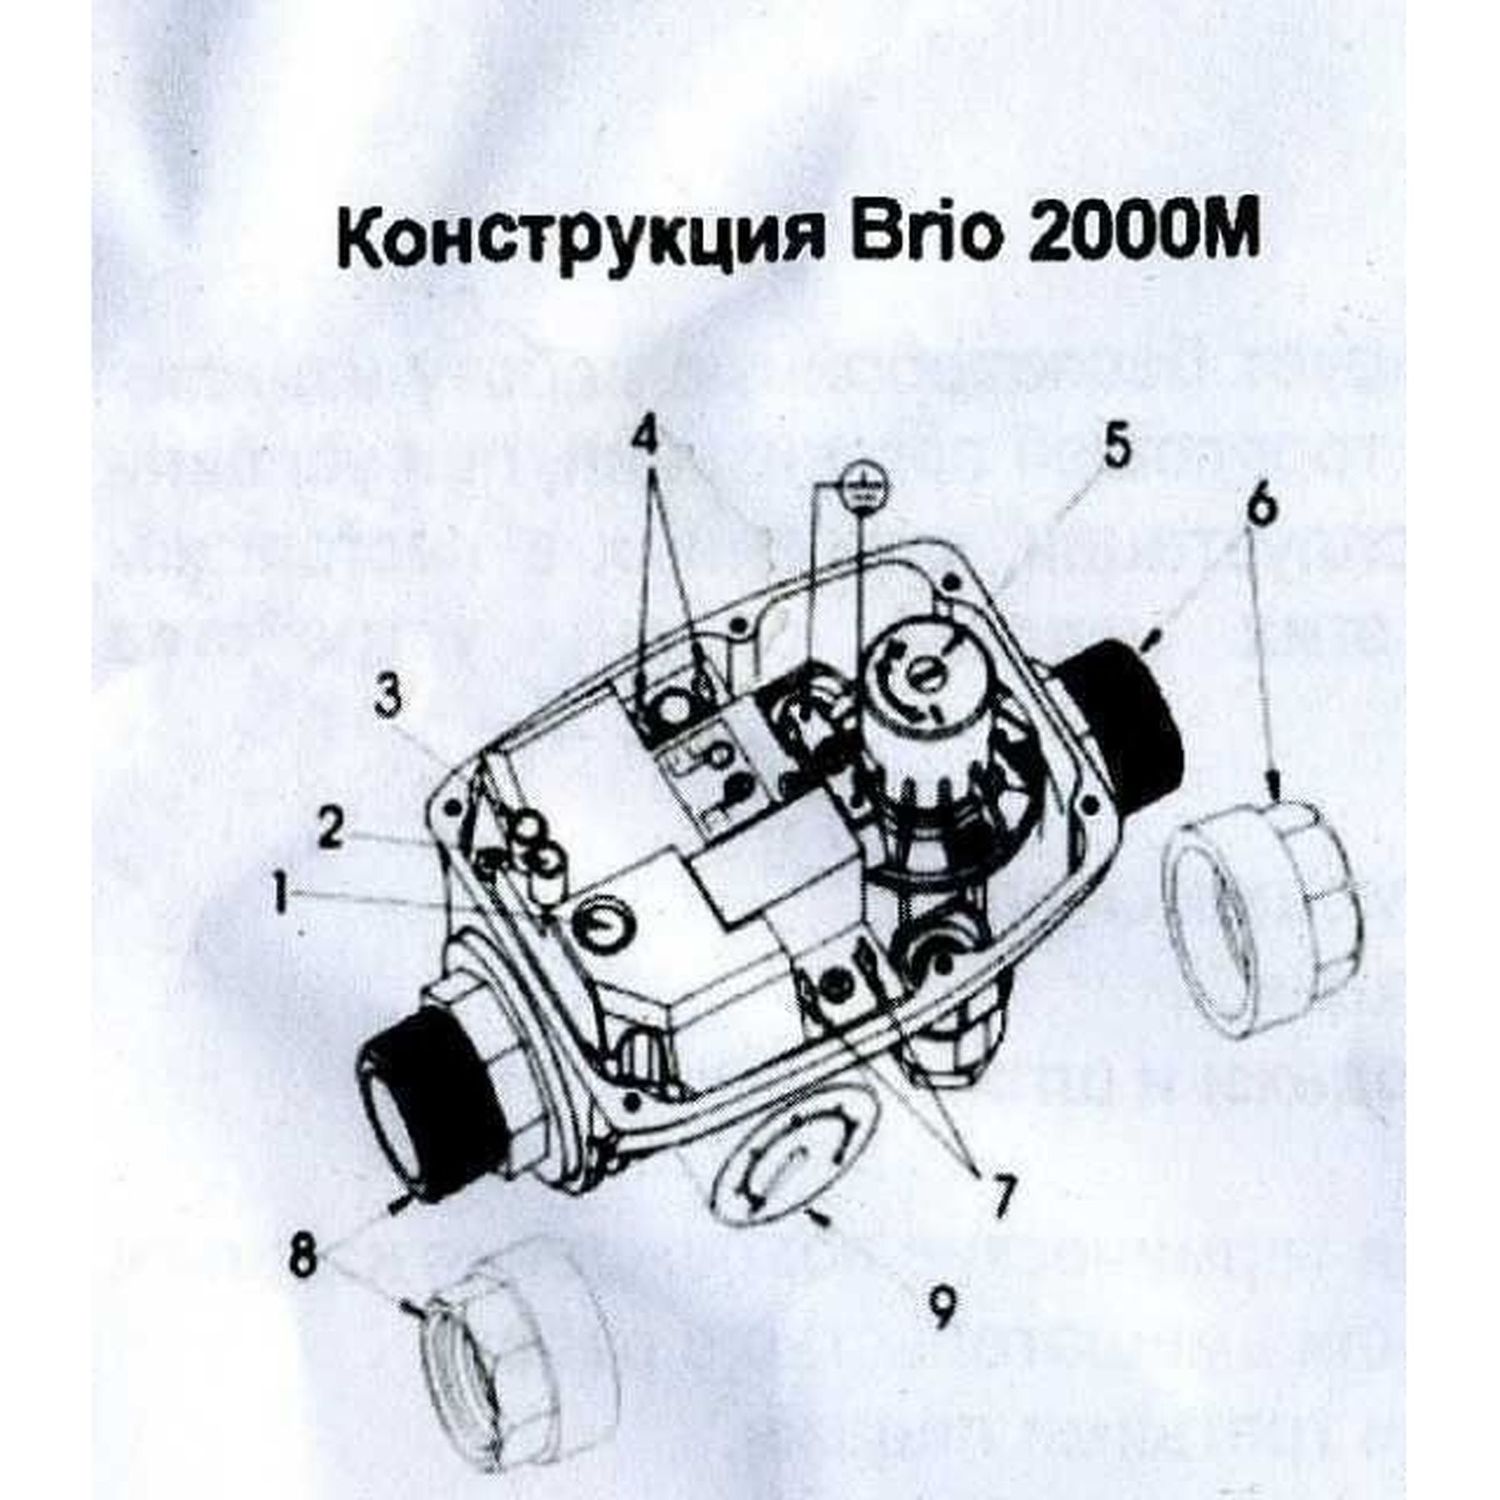 Захист сухого ходу Brio 2000